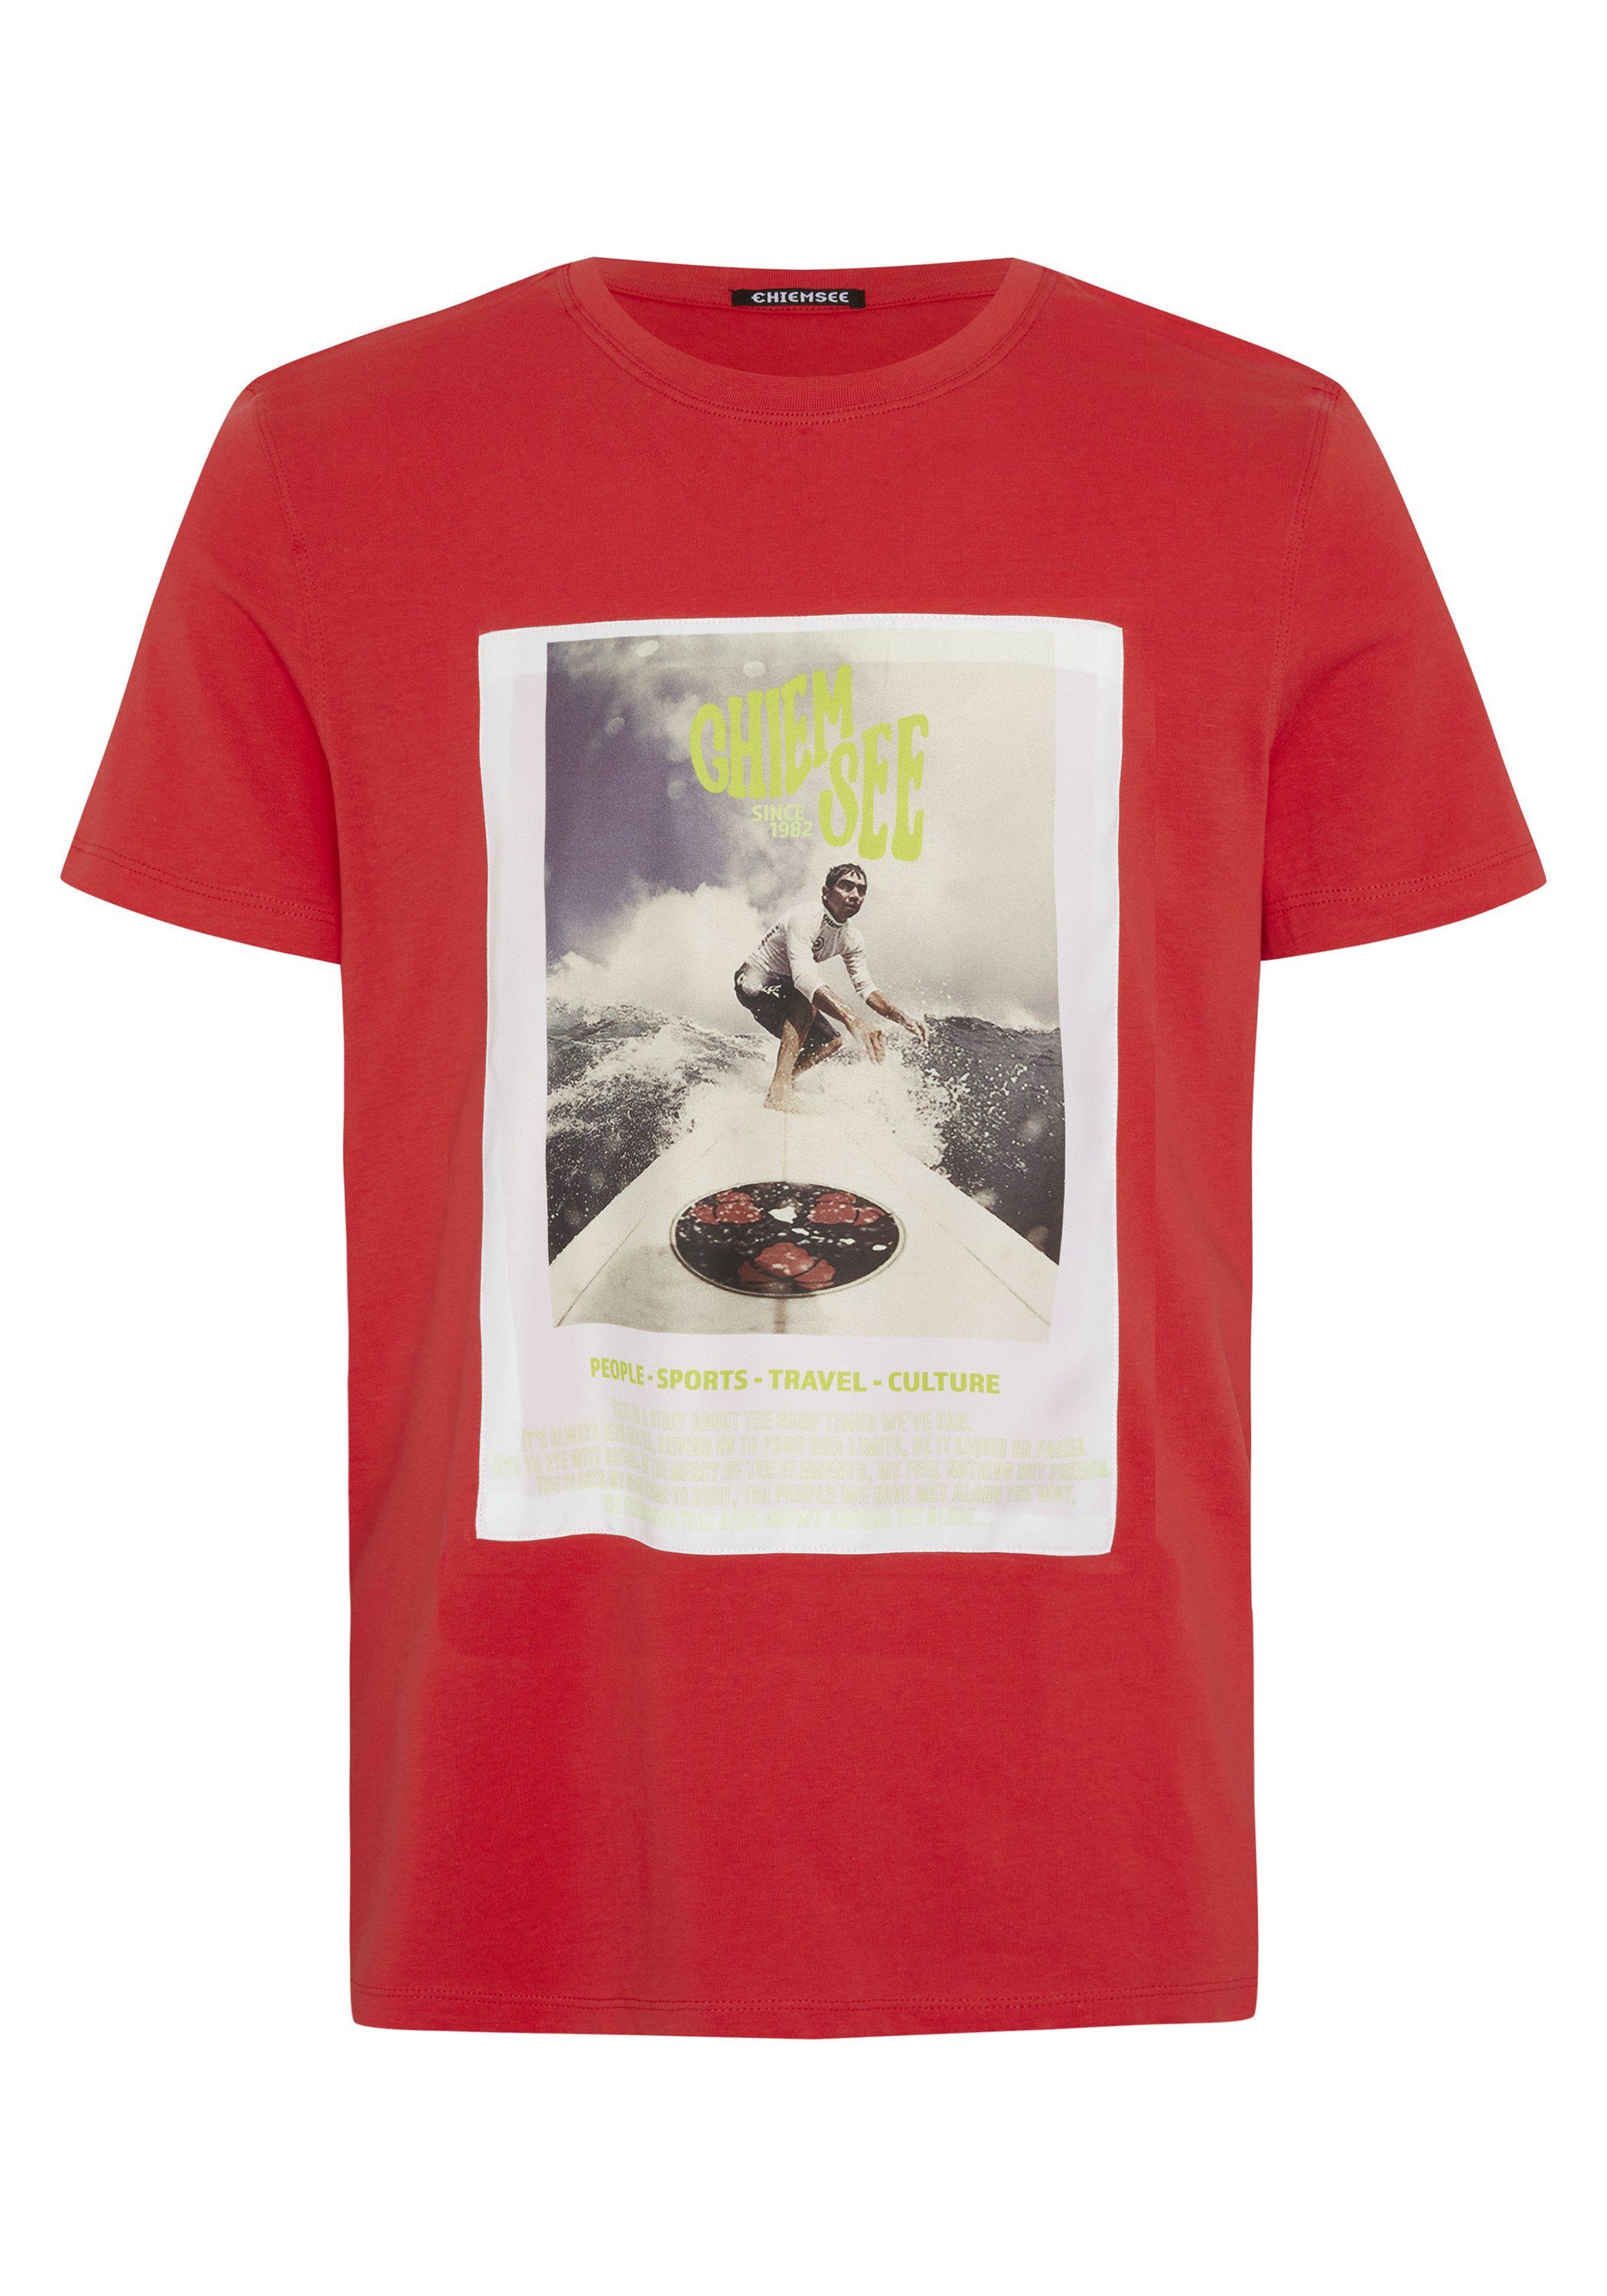 Chiemsee Print-Shirt T-Shirt aus Baumwolle mit Surf-Fotoprint 1 17-1663 Bittersweet